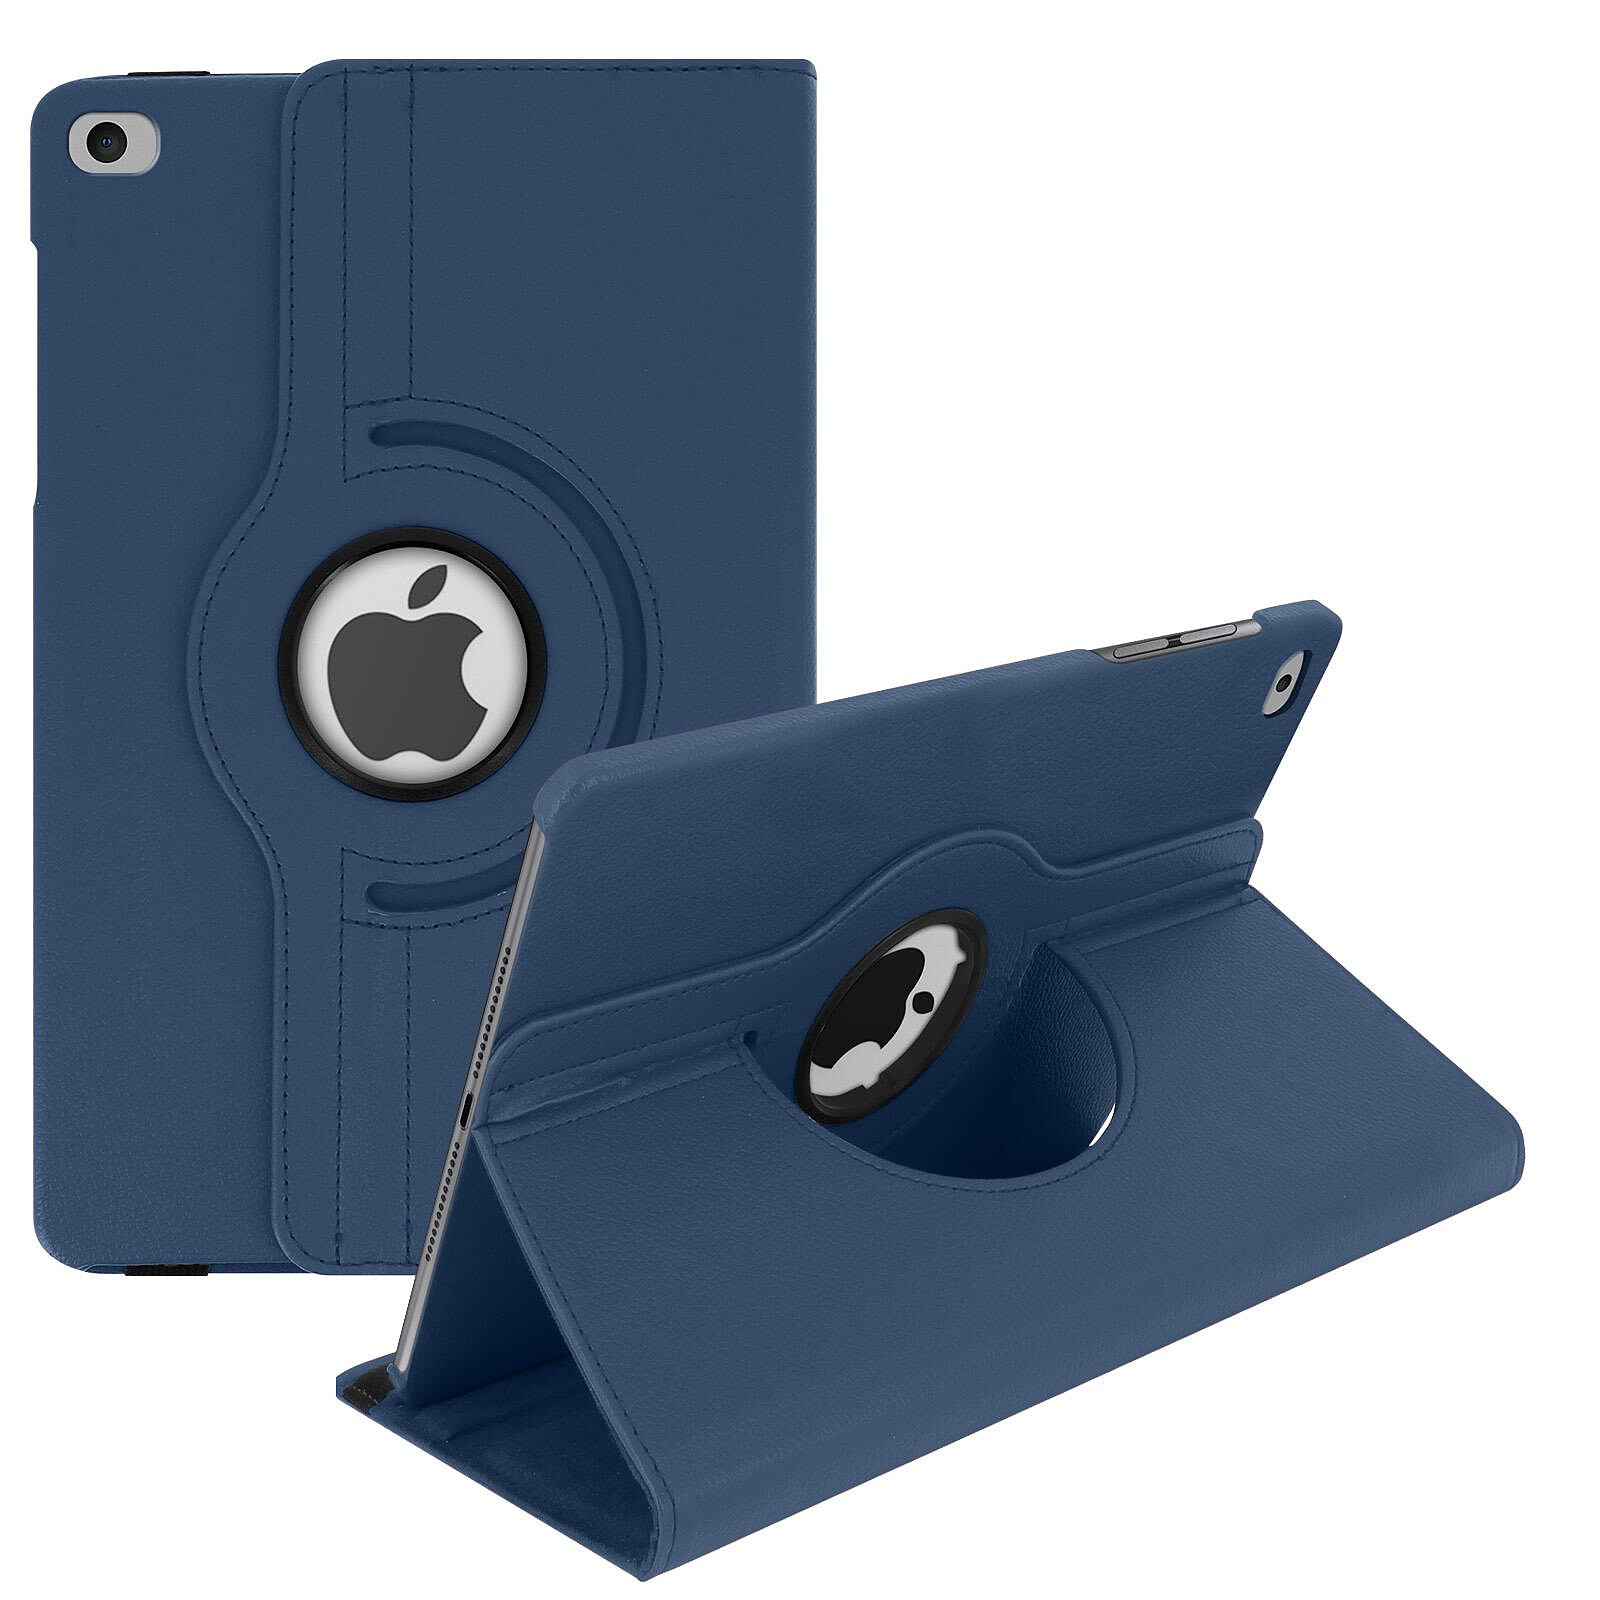 ProCase Étui pour iPad 9.7 2018/2017 Argenté Smart Cover Case Housse Coque de Protection Mince avec Support Fonction et Veille/Réveil Automatique pour Apple iPad 9.7 Pouces 5ème /6ème Génération 